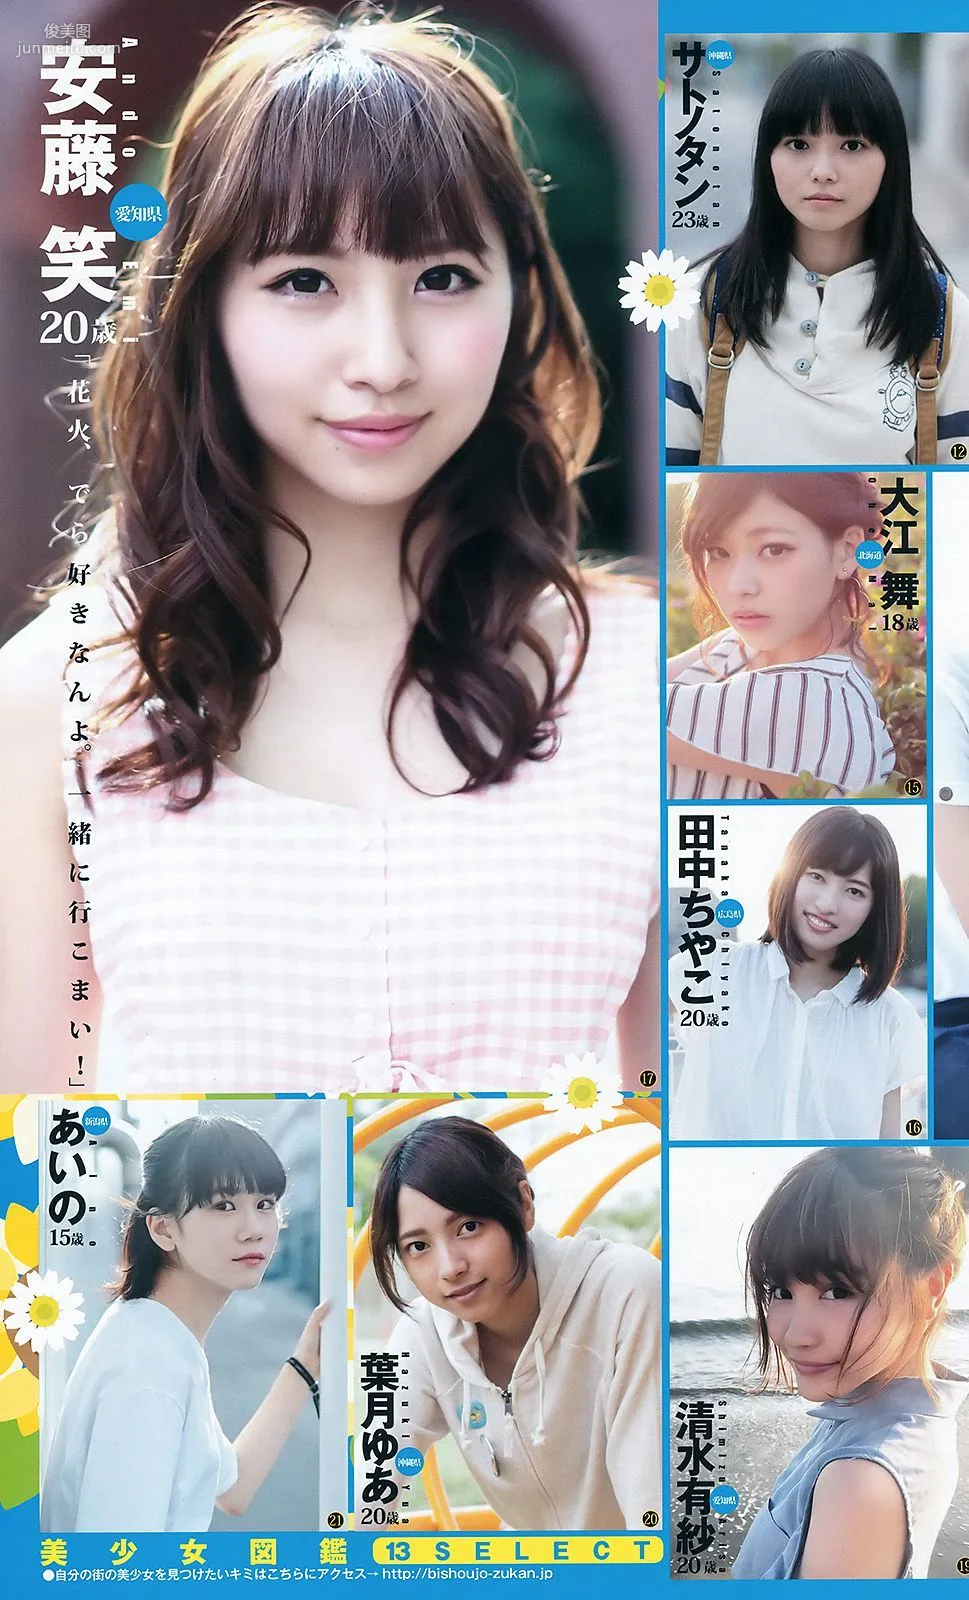 武田玲奈 全国美少女 mini BOOK [Weekly Young Jump週刊ヤングジャンプ] 2016年No.37-38写真杂志19